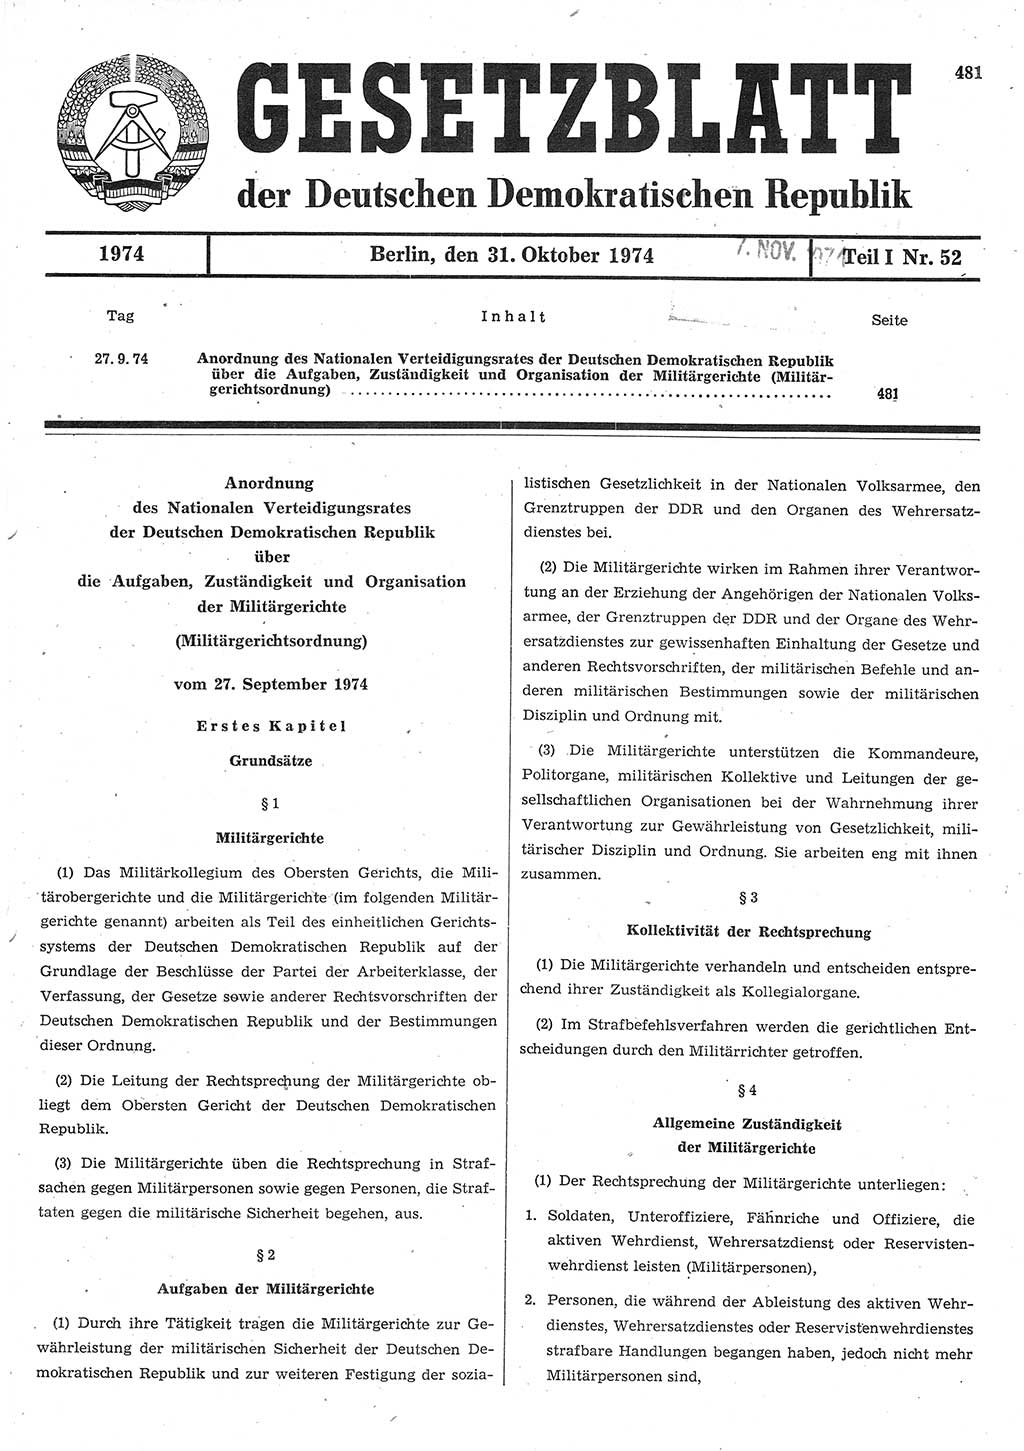 Gesetzblatt (GBl.) der Deutschen Demokratischen Republik (DDR) Teil Ⅰ 1974, Seite 481 (GBl. DDR Ⅰ 1974, S. 481)